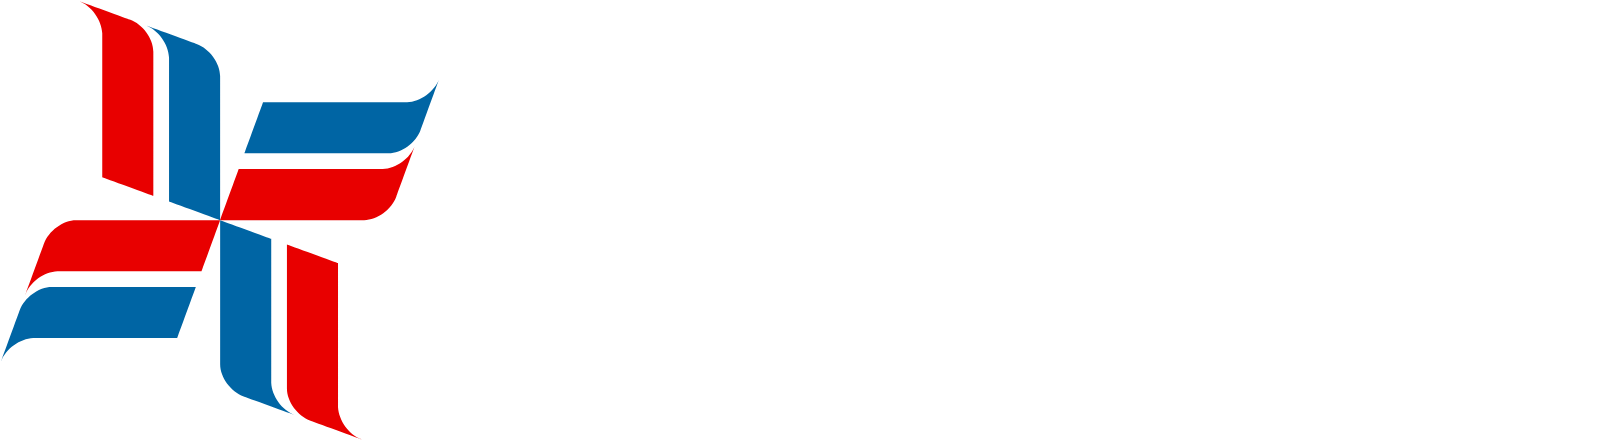 Bristow Group logo grand pour les fonds sombres (PNG transparent)